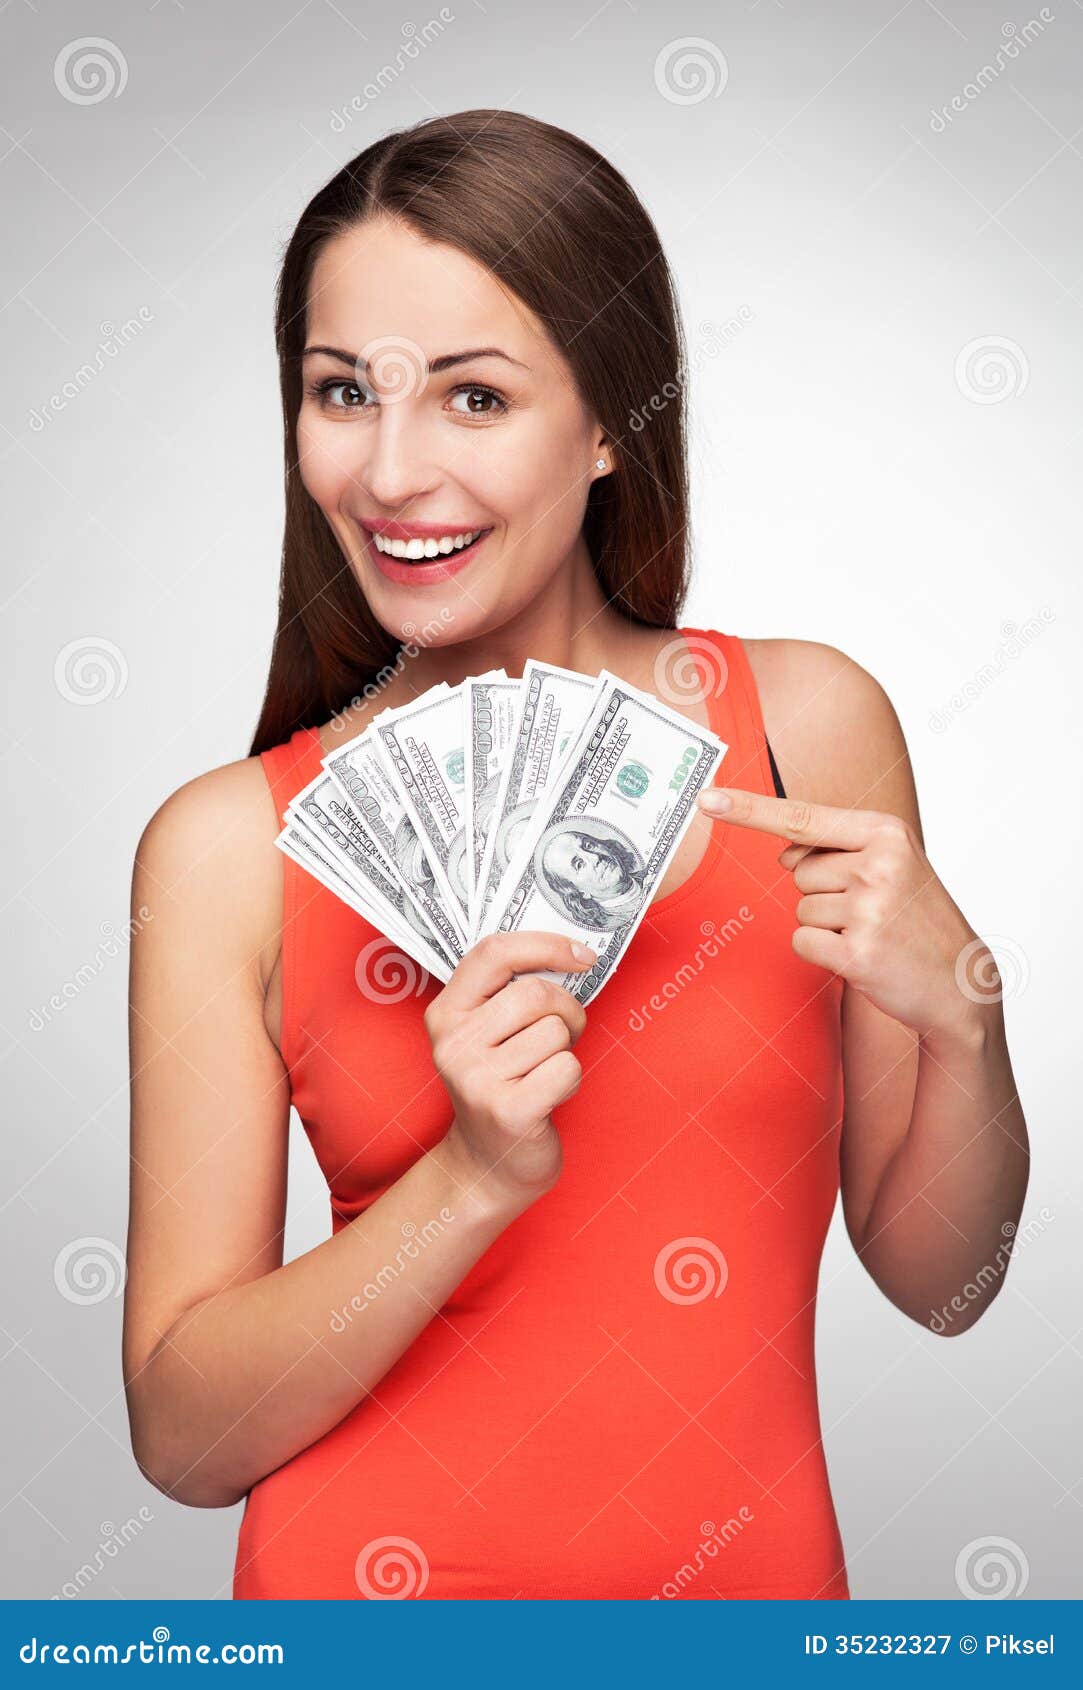 Дама дающая деньги в долг. Девушка с деньгами. Девушка держит деньги в руках. Рубли в руках женщины. Довольная девушка с деньгами.